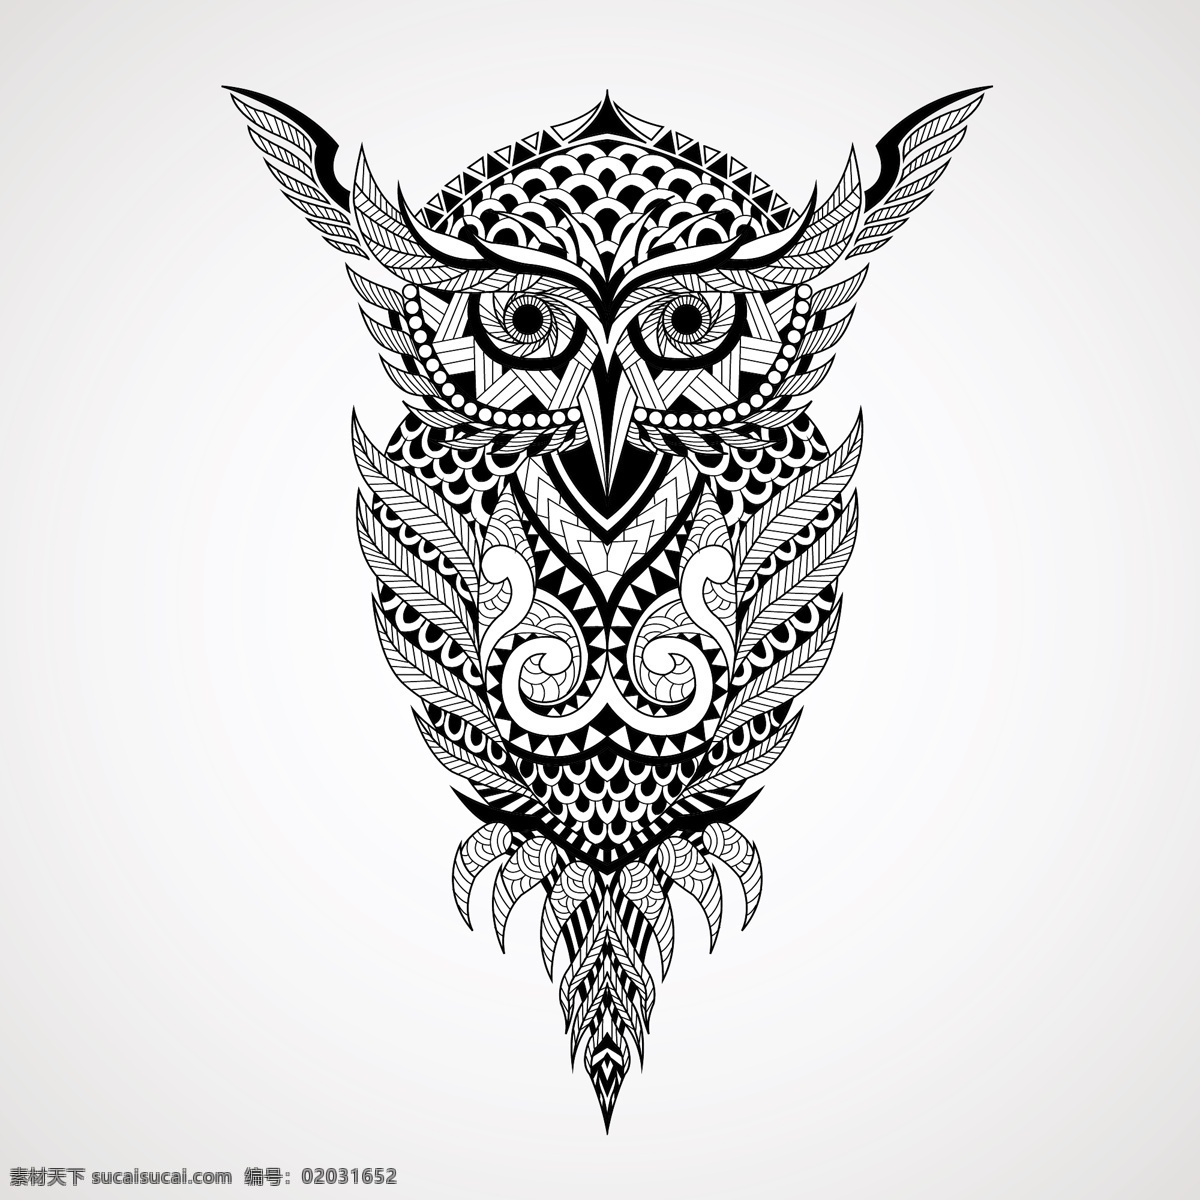 几何 装饰 图案 猫头鹰 插画 装饰图案 动物 线条 矢量素材